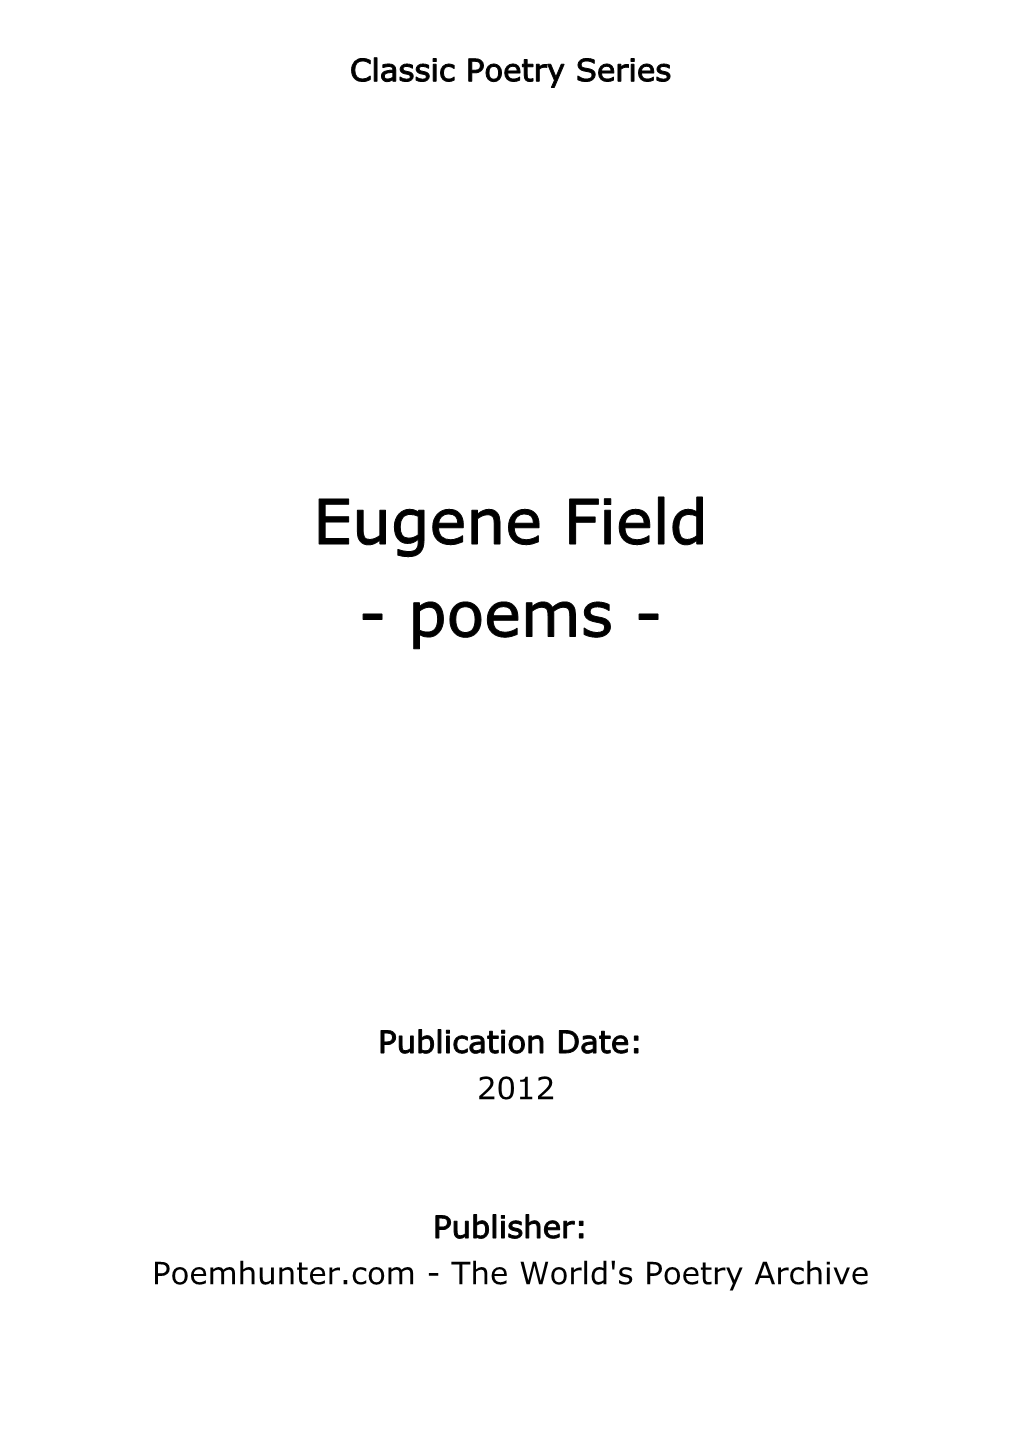 Eugene Field - Poems